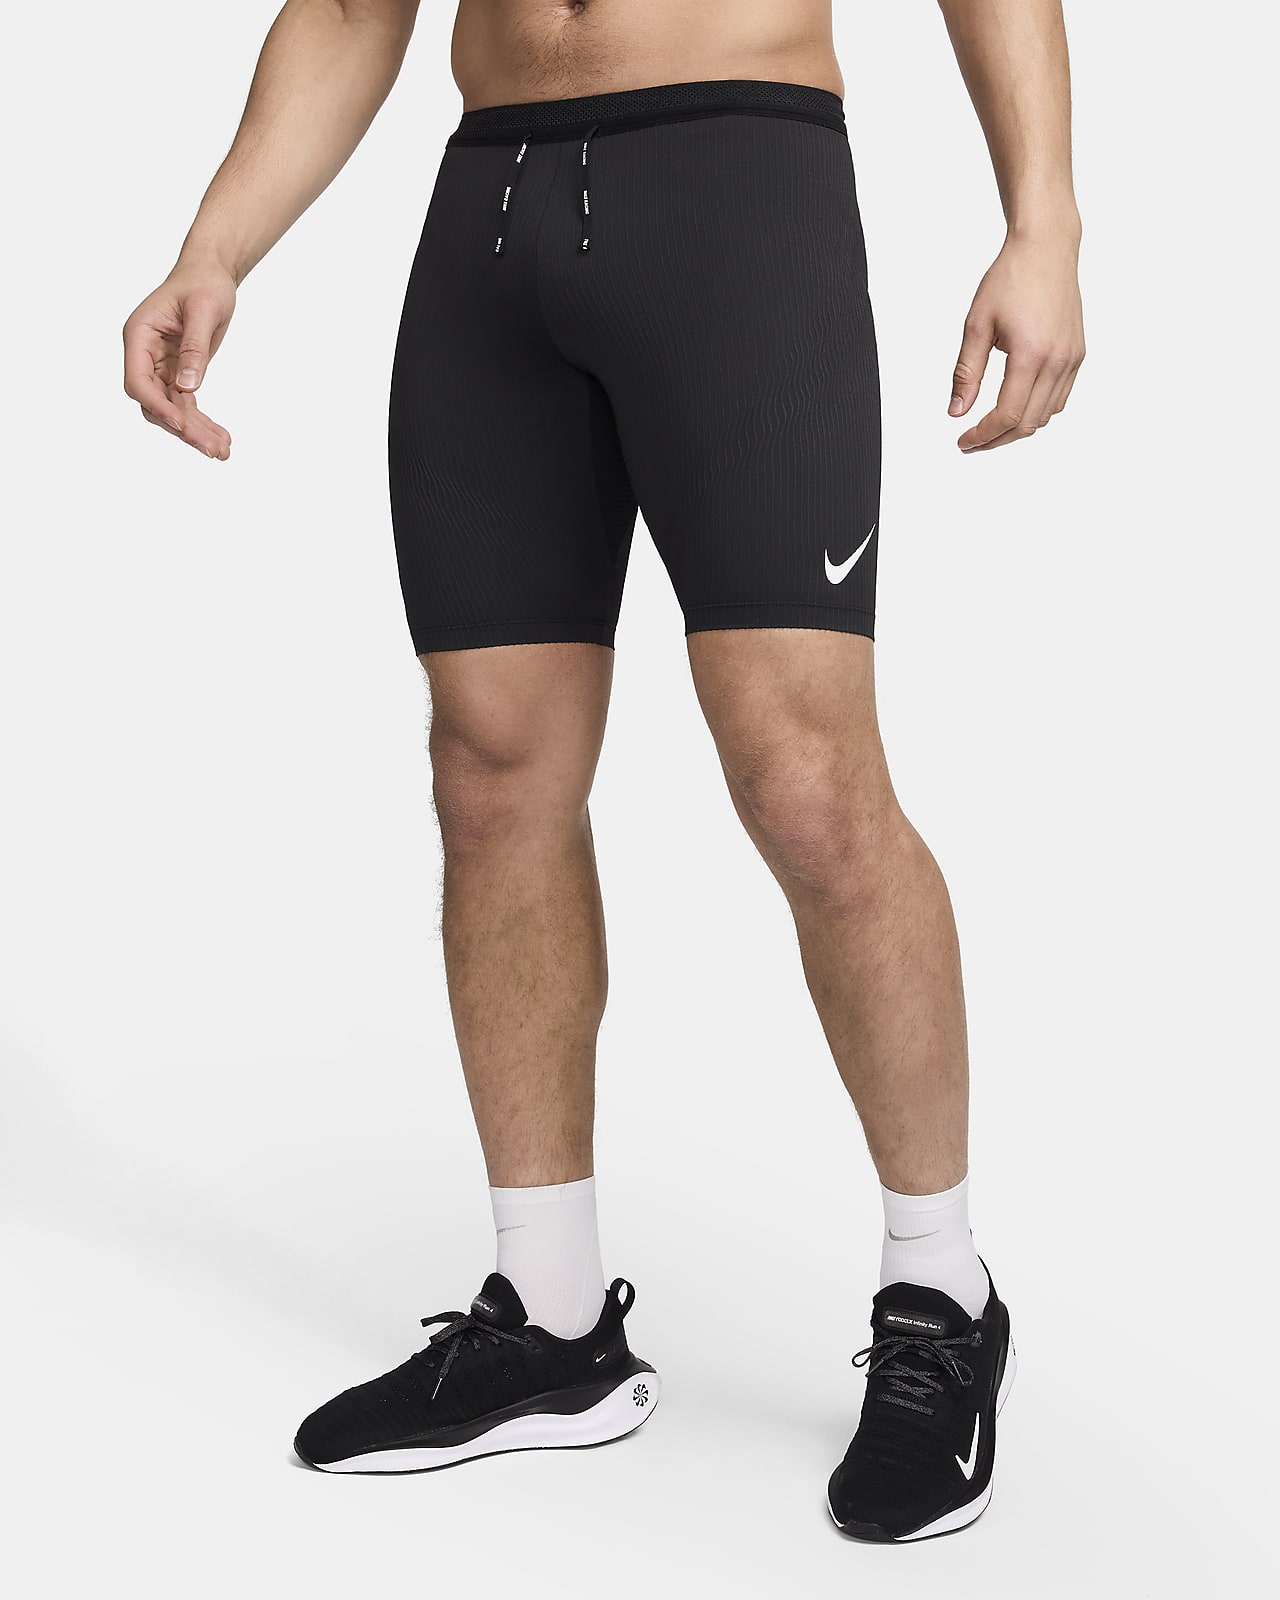 Jogging Dri-Fit Shorts for Men